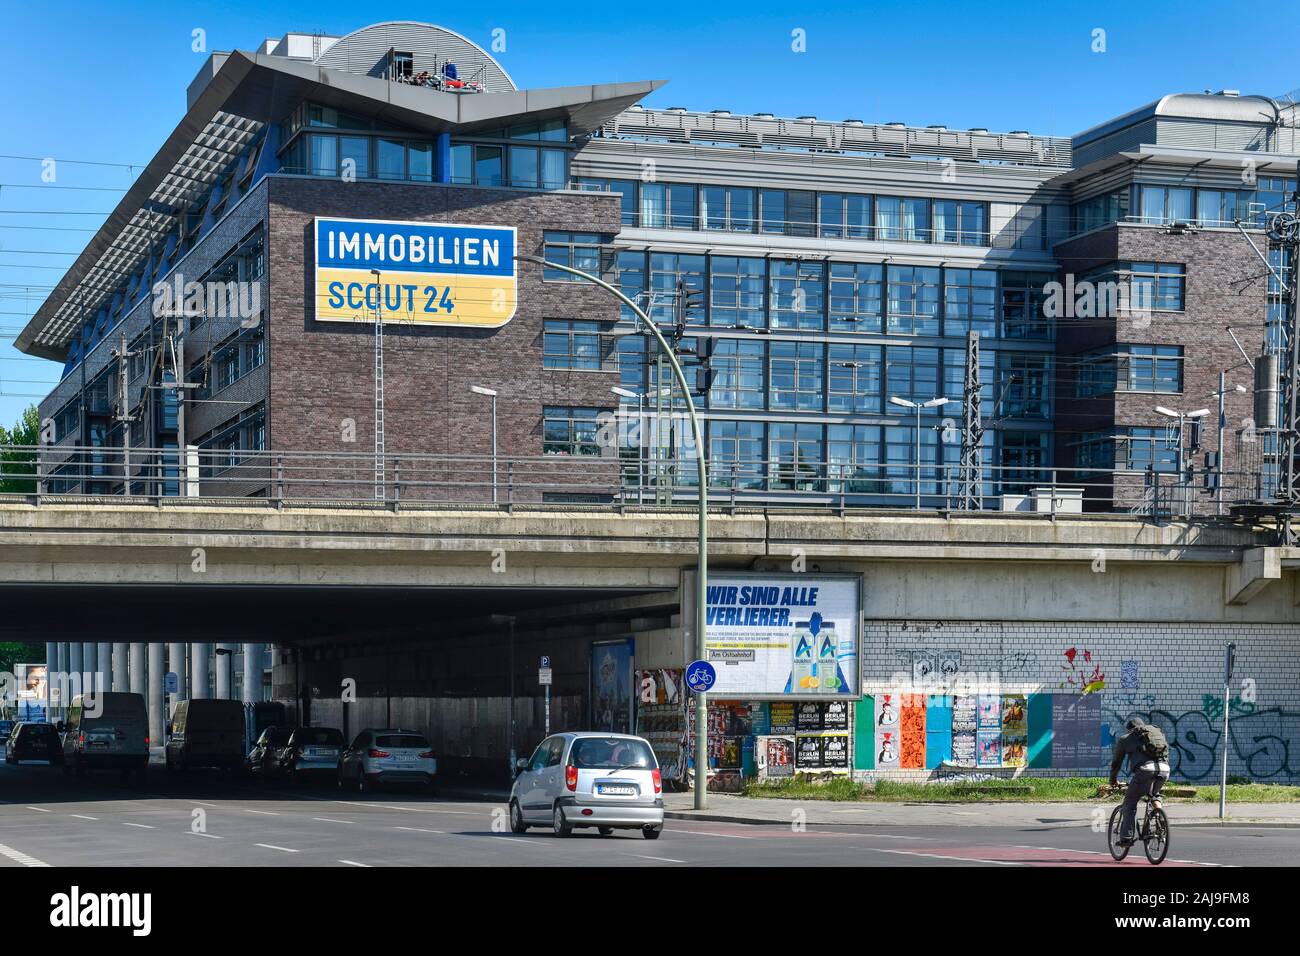 Immobilien Scout, Andreasstraße, Friedrichshain, Berlin, Deutschland Stock Photo